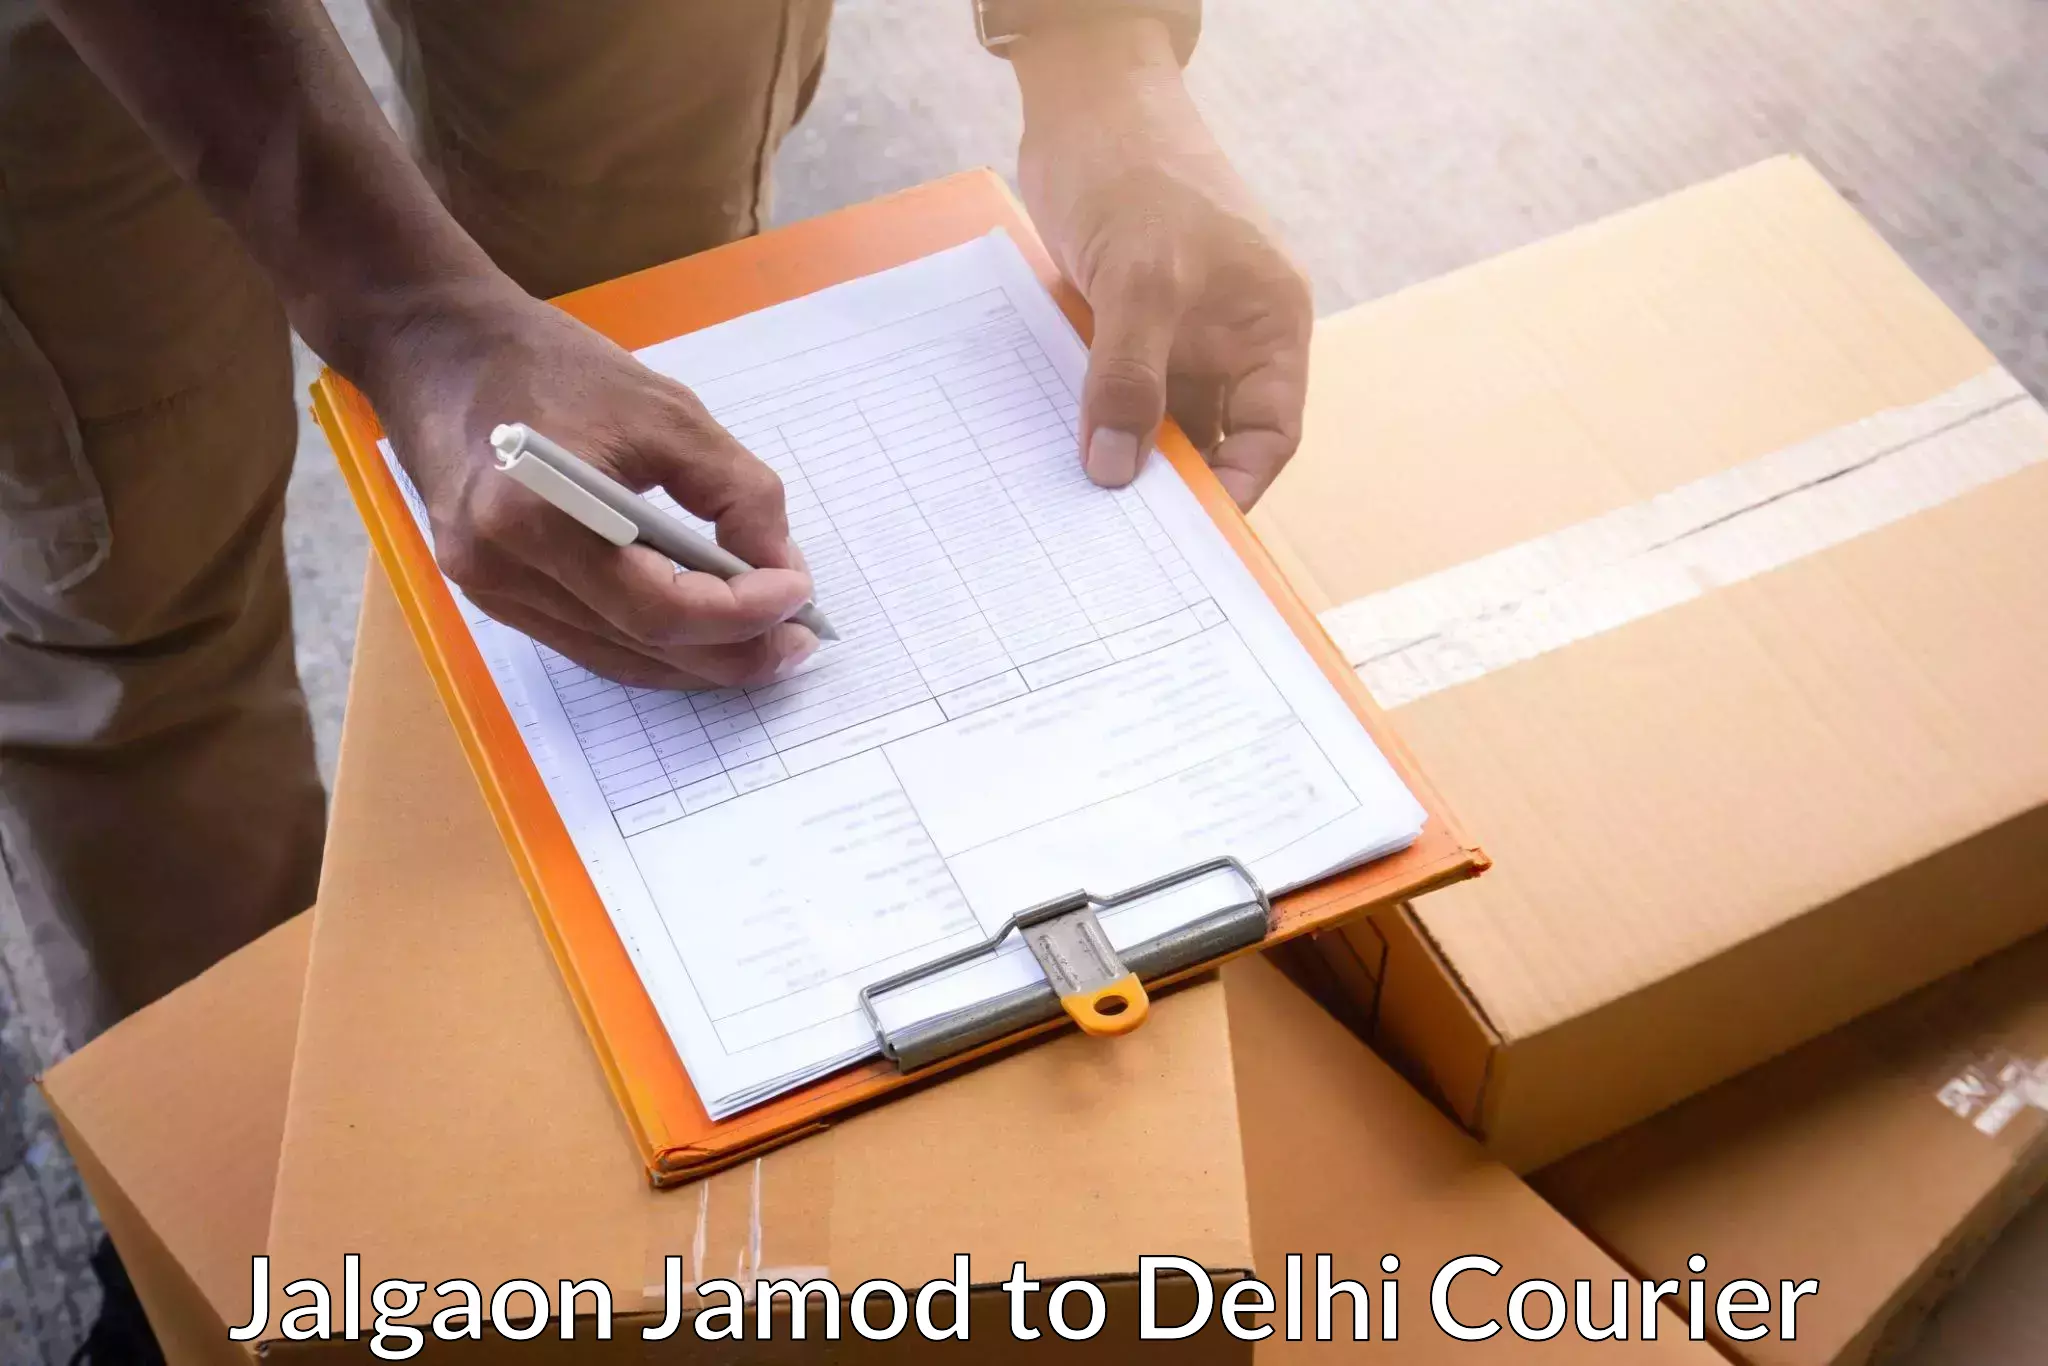 Reliable courier services Jalgaon Jamod to Kalkaji